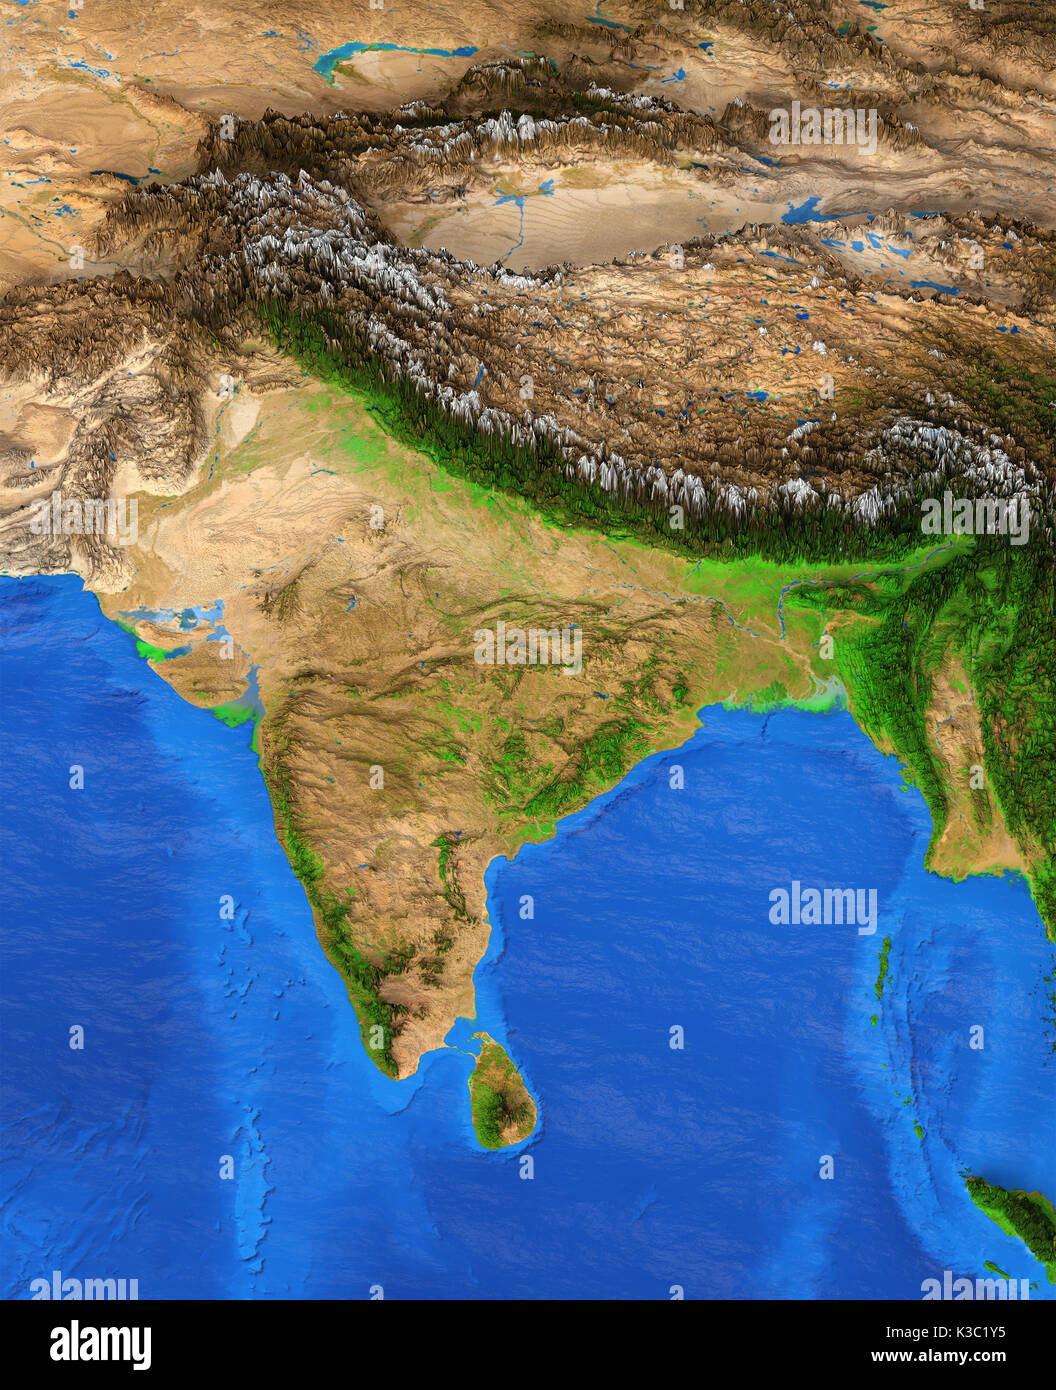 Karte von Indien. Detaillierte Sat-Blick auf die Erde und seine Landschaftsformen. Elemente dieses Bild von der NASA eingerichtet Stockfoto